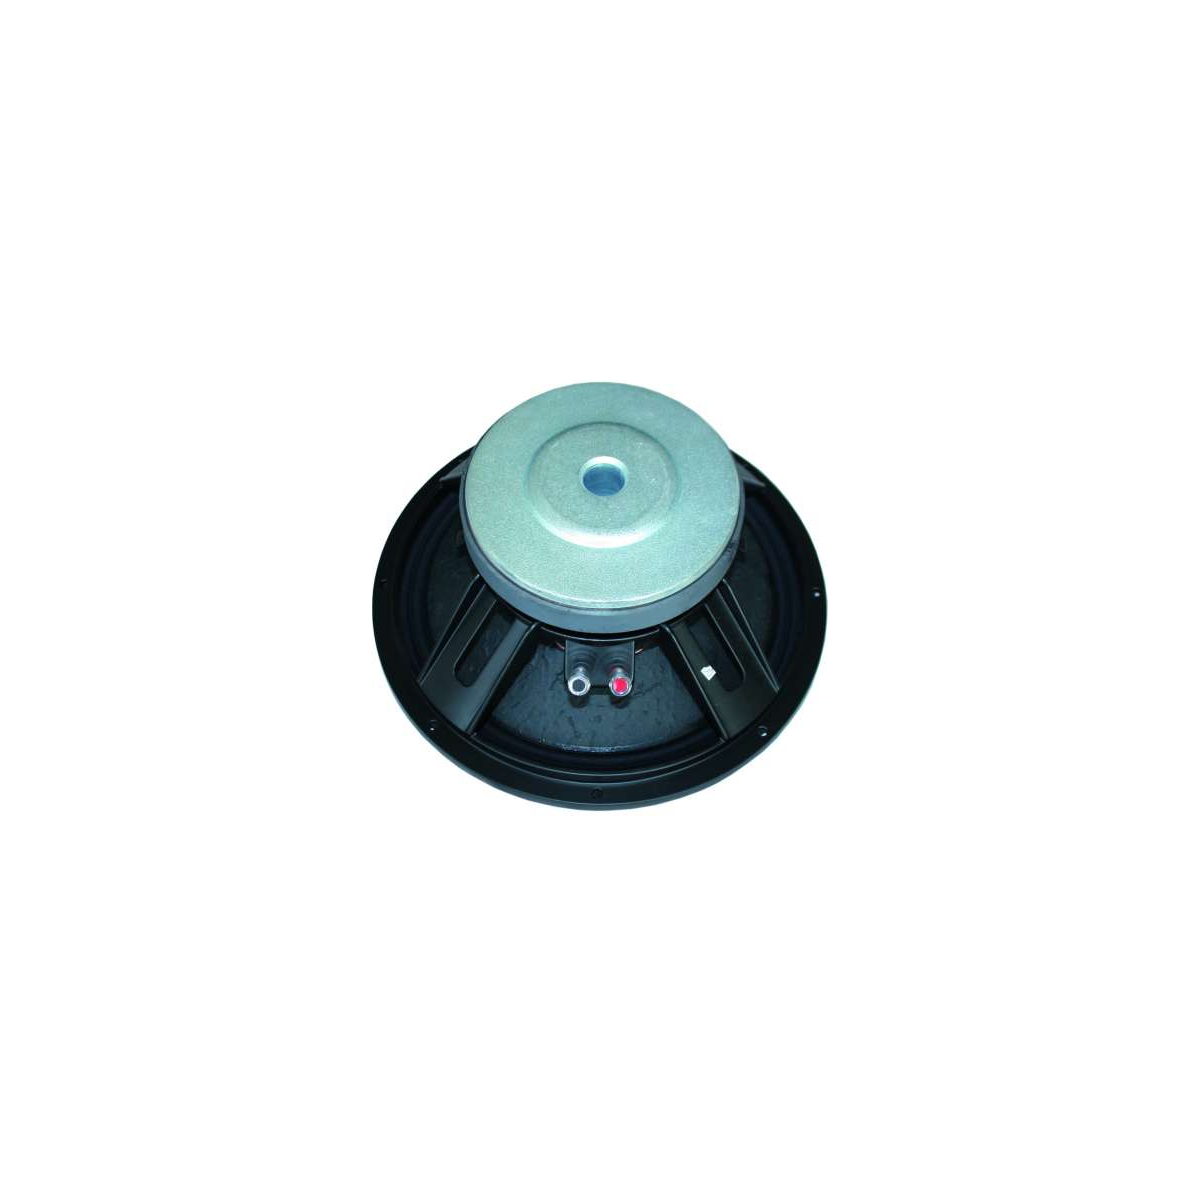 Hauts parleurs basse fréquence - Definitive Audio - FS 1802 A